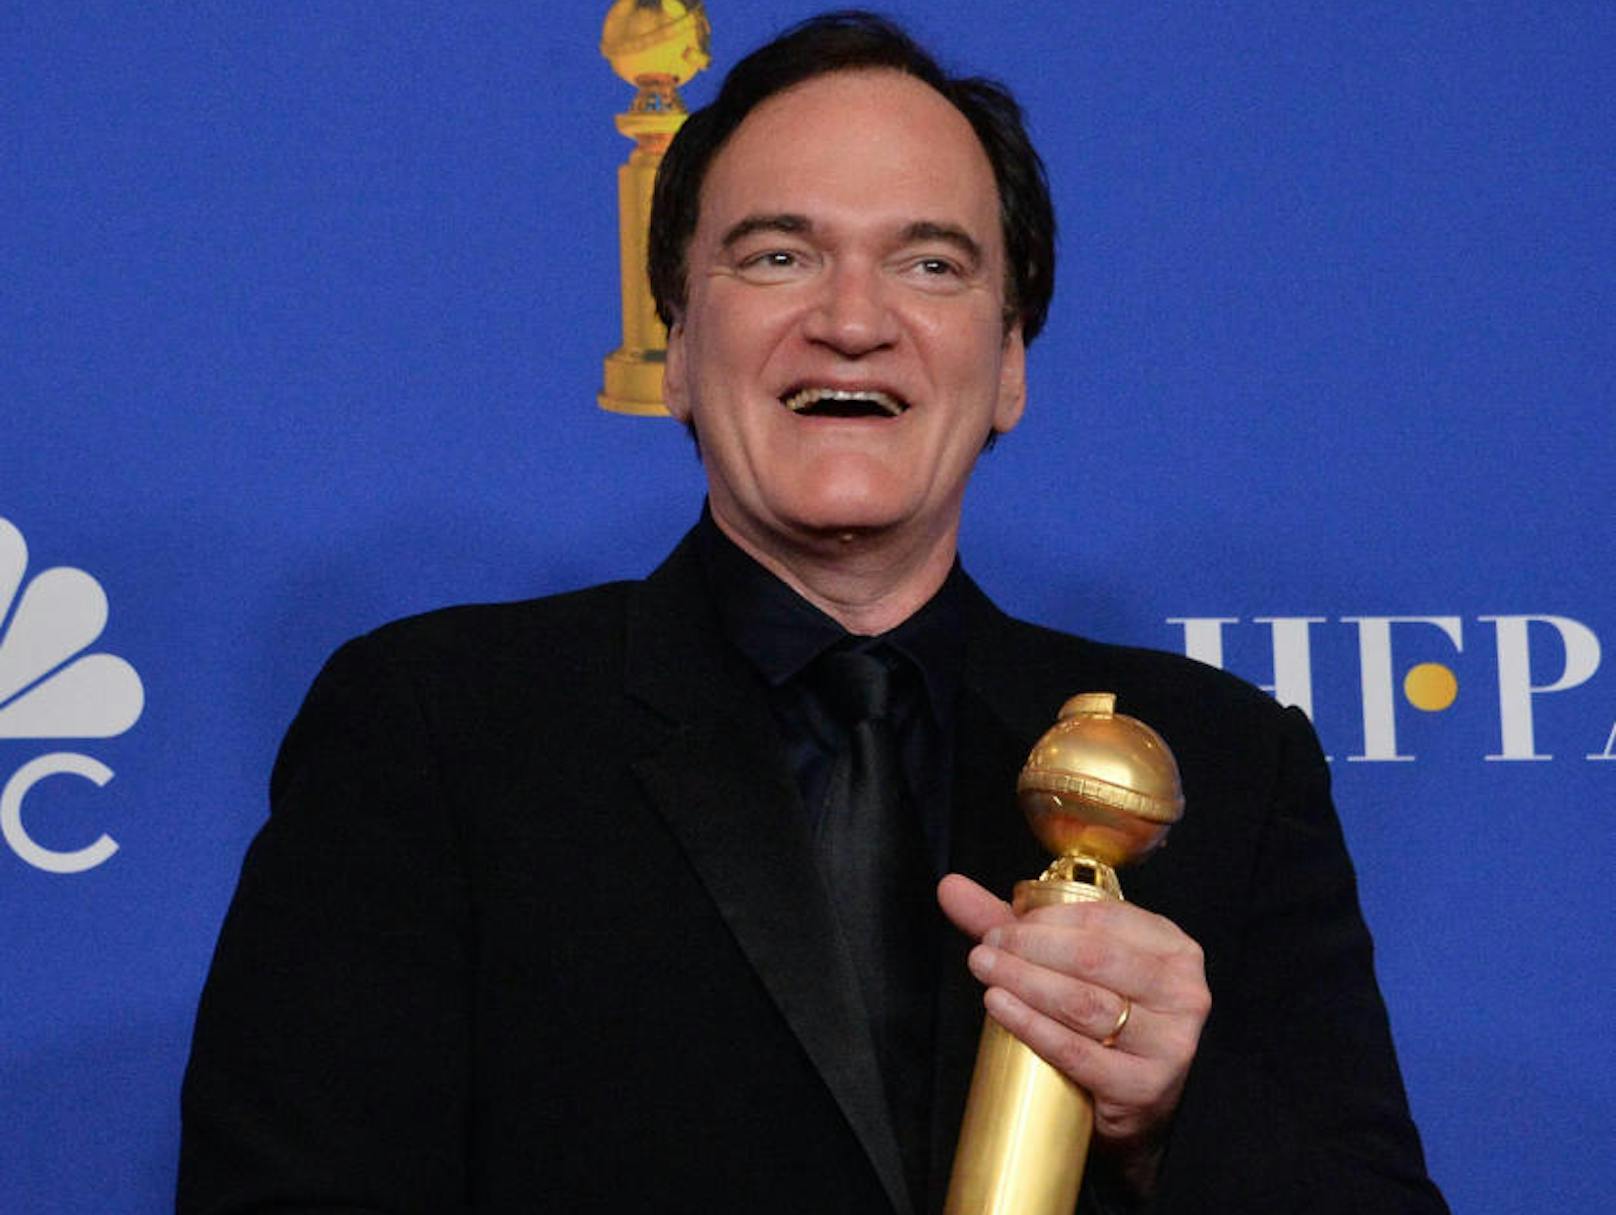 <strong>PLATZ 2</strong>: Kult-Regisseur <strong>Quentin Tarantino</strong> schmiss trotz seines IQ von 160 die Schule. Heute heimst er für seine Filme wie "Once upon a Time ... in Hollywood" zahlreiche Preise ein.